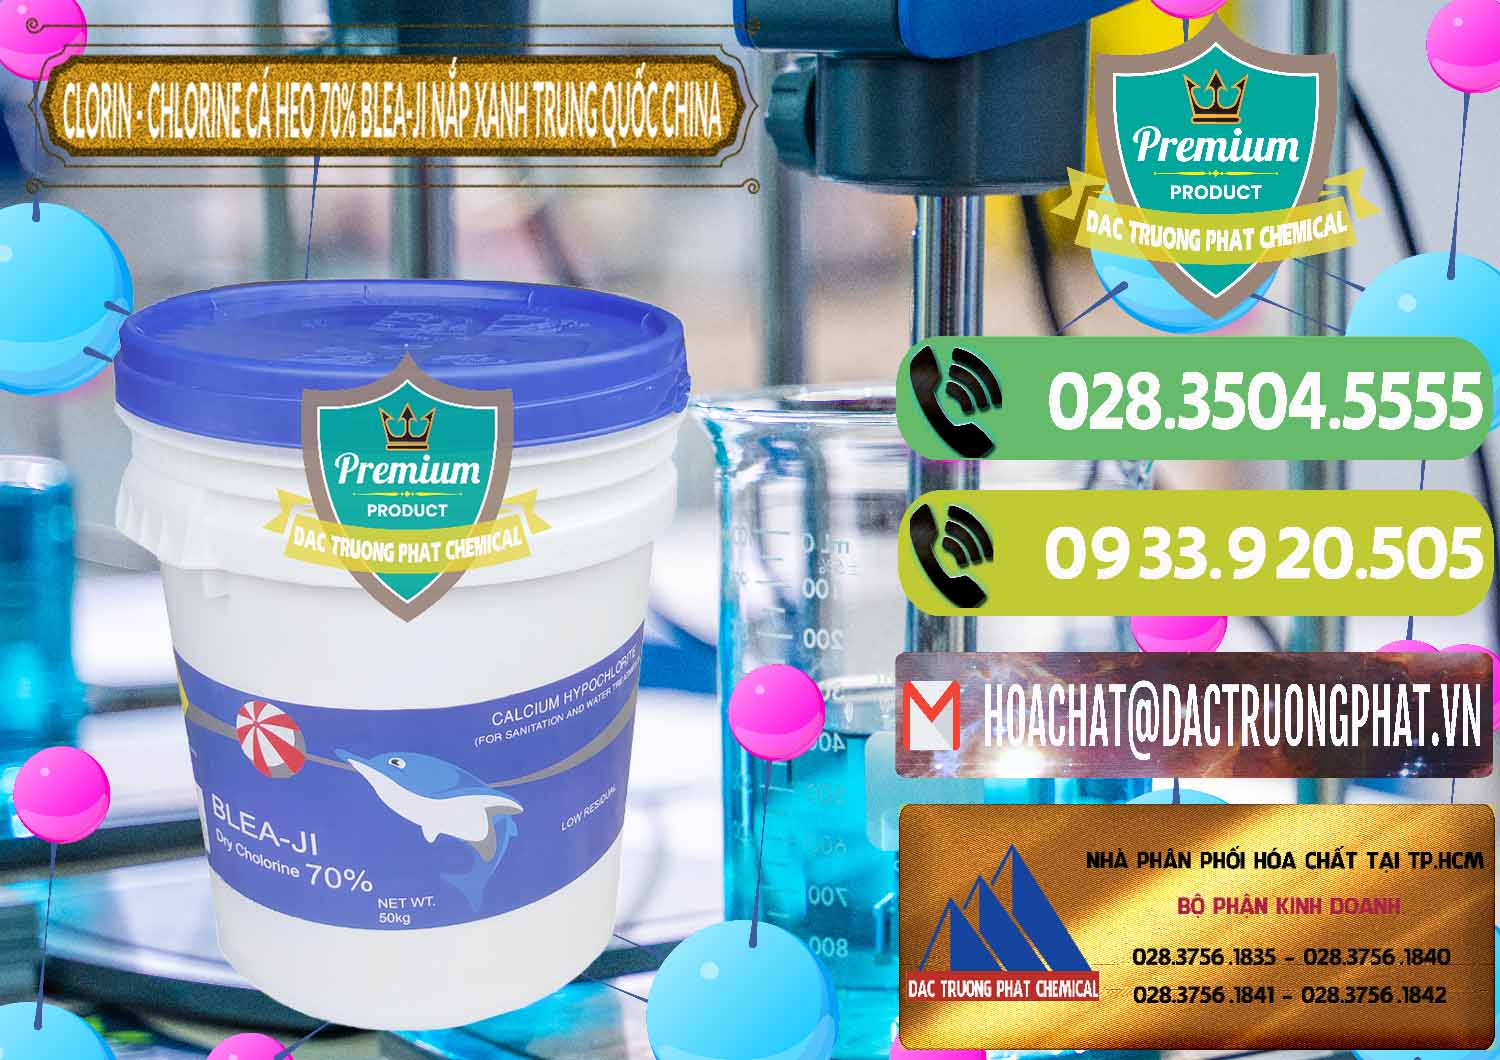 Chuyên bán và cung cấp Clorin - Chlorine Cá Heo 70% Cá Heo Blea-Ji Thùng Tròn Nắp Xanh Trung Quốc China - 0208 - Cung cấp ( phân phối ) hóa chất tại TP.HCM - hoachatmientay.vn